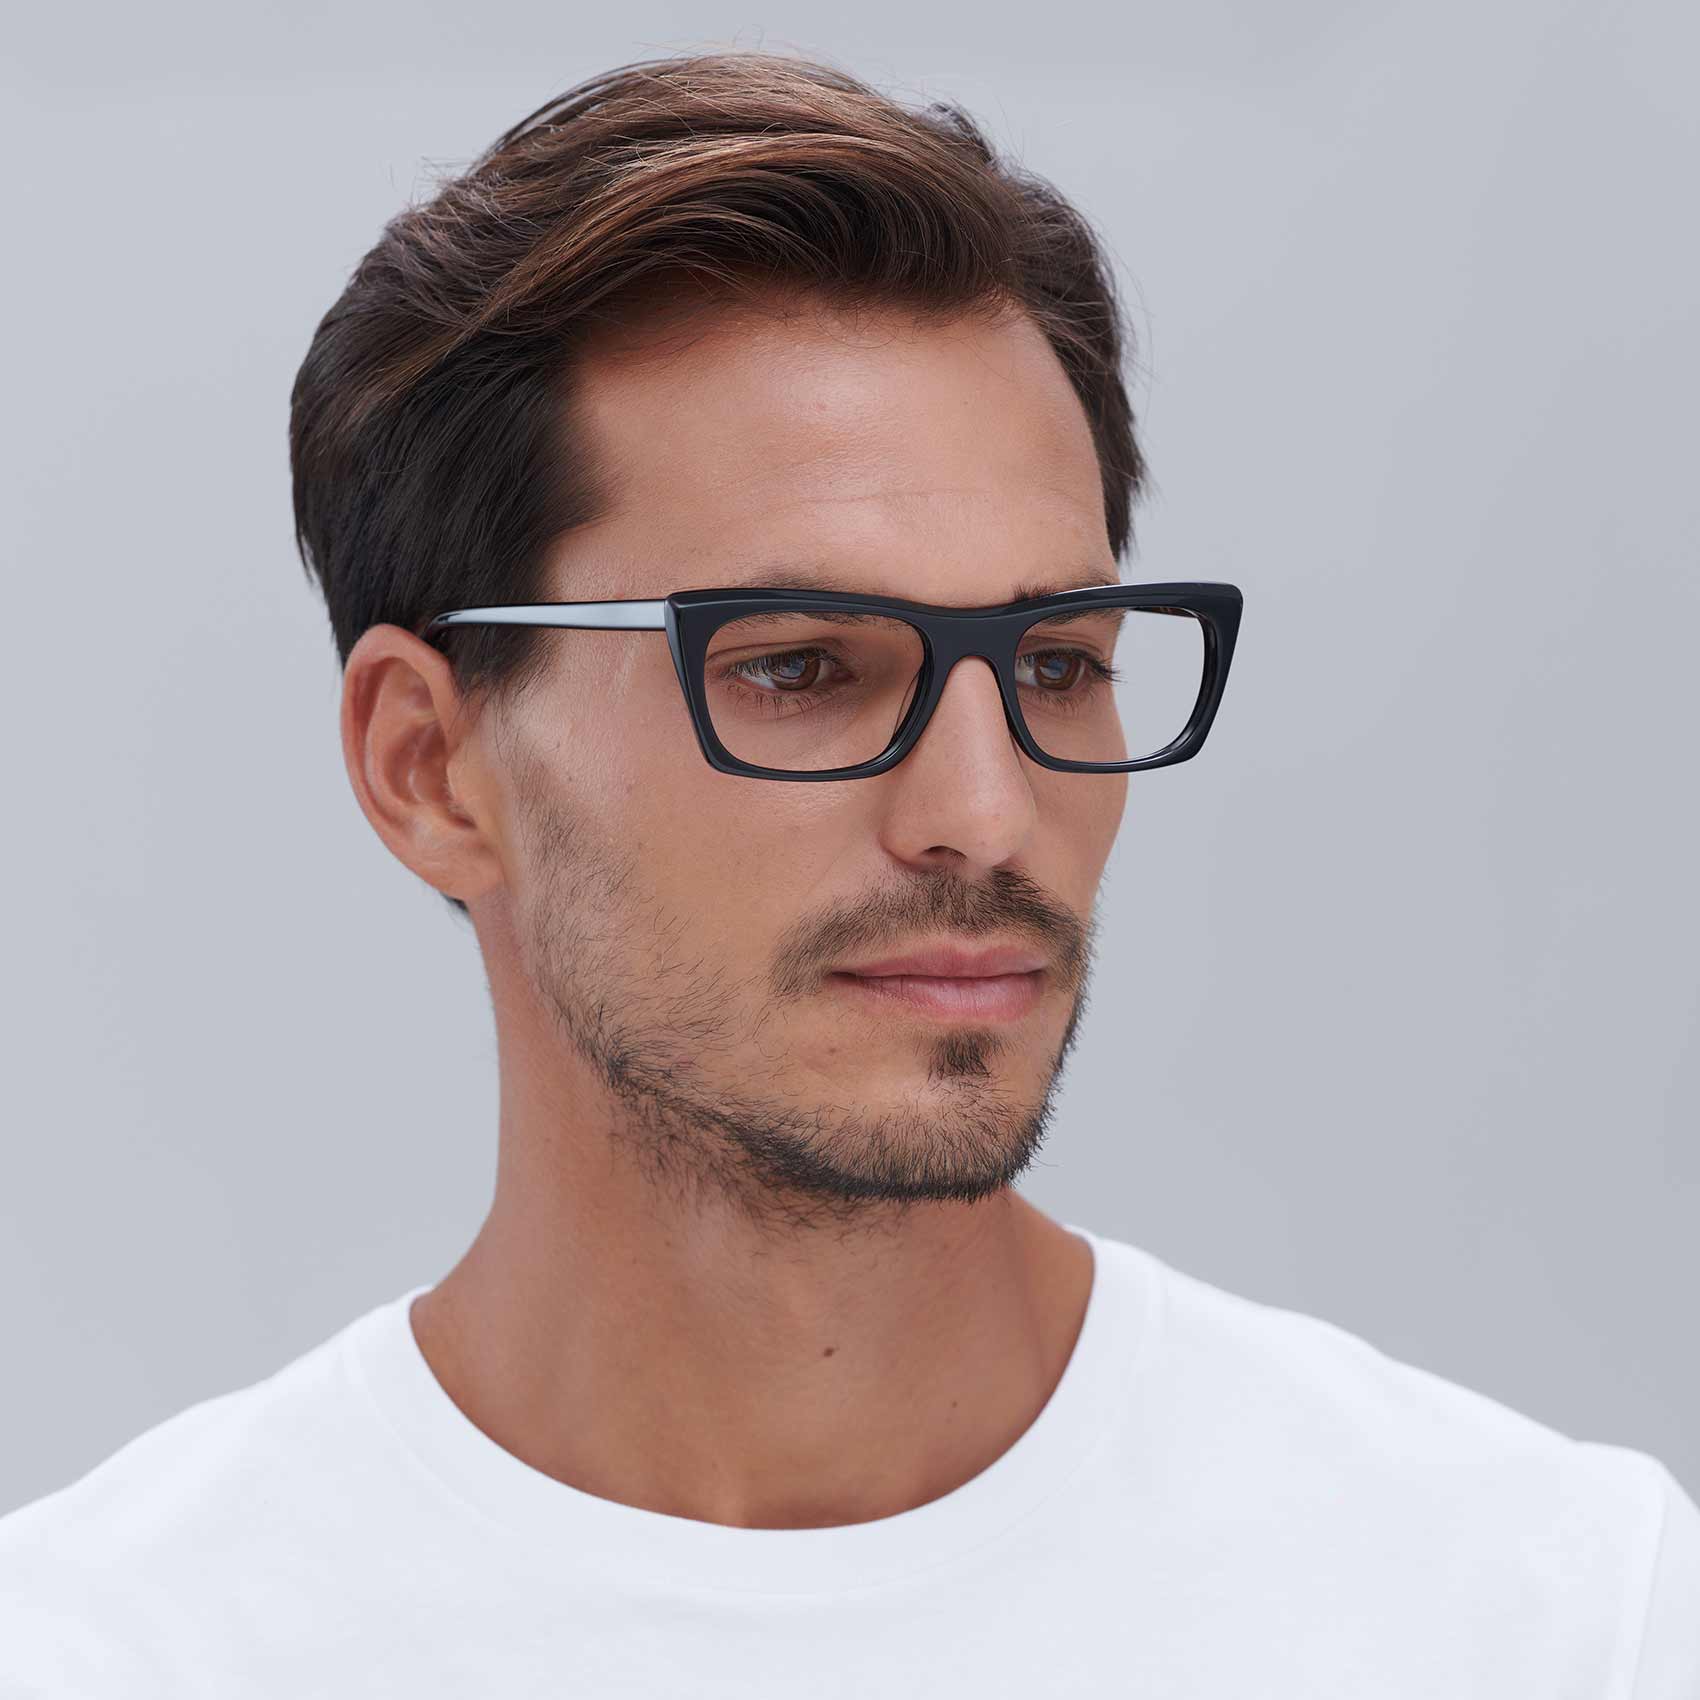 Malvarrosa prescription glasses for men in black